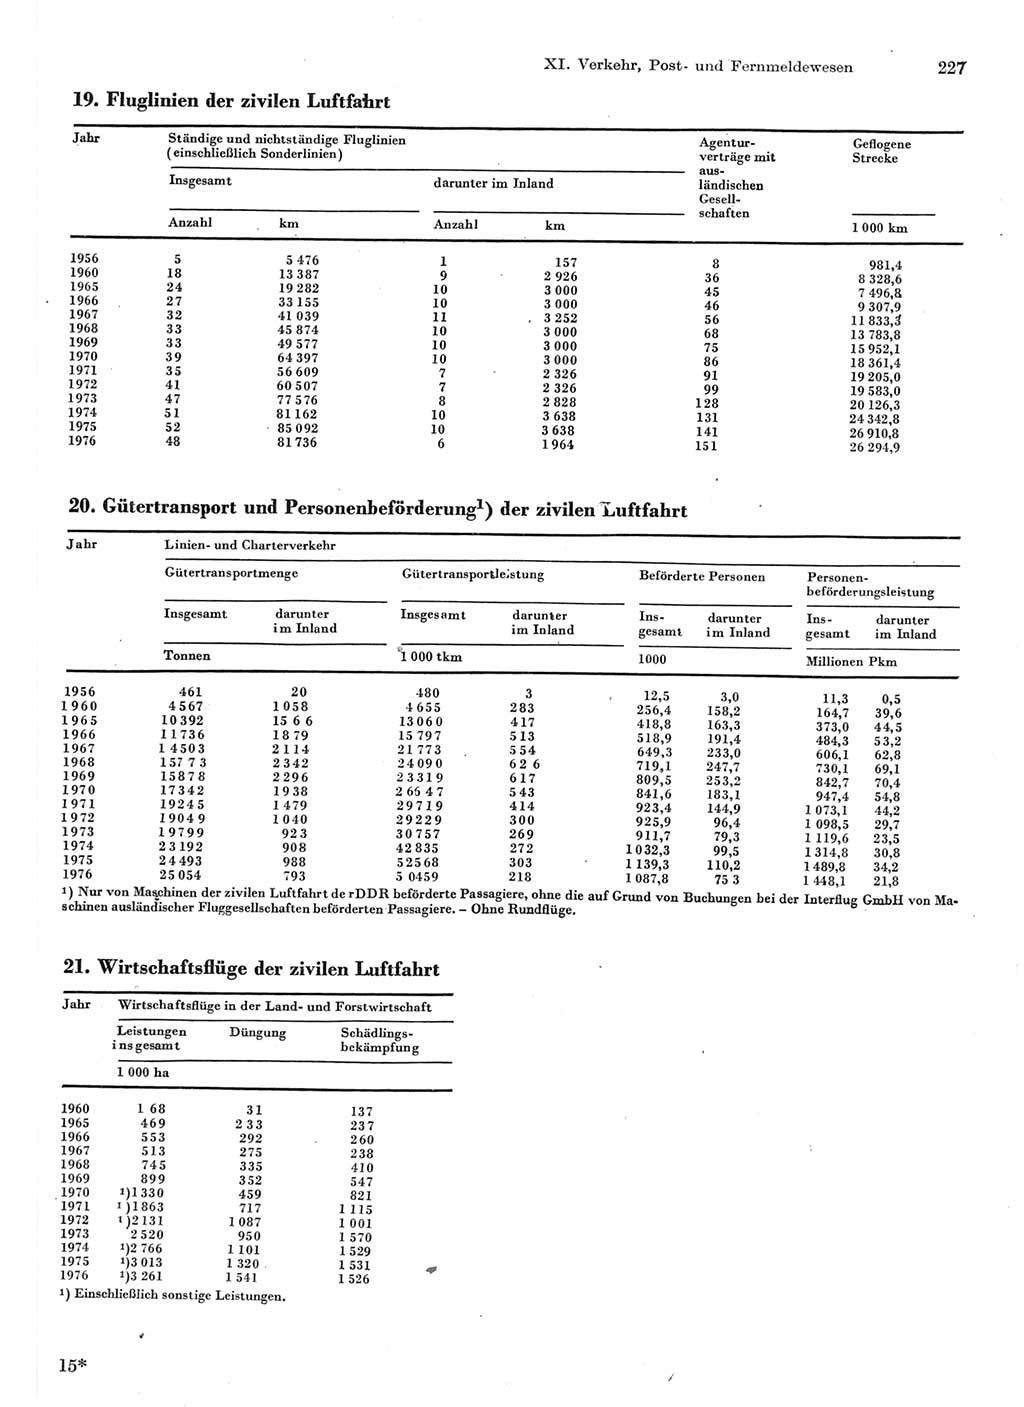 Statistisches Jahrbuch der Deutschen Demokratischen Republik (DDR) 1977, Seite 227 (Stat. Jb. DDR 1977, S. 227)